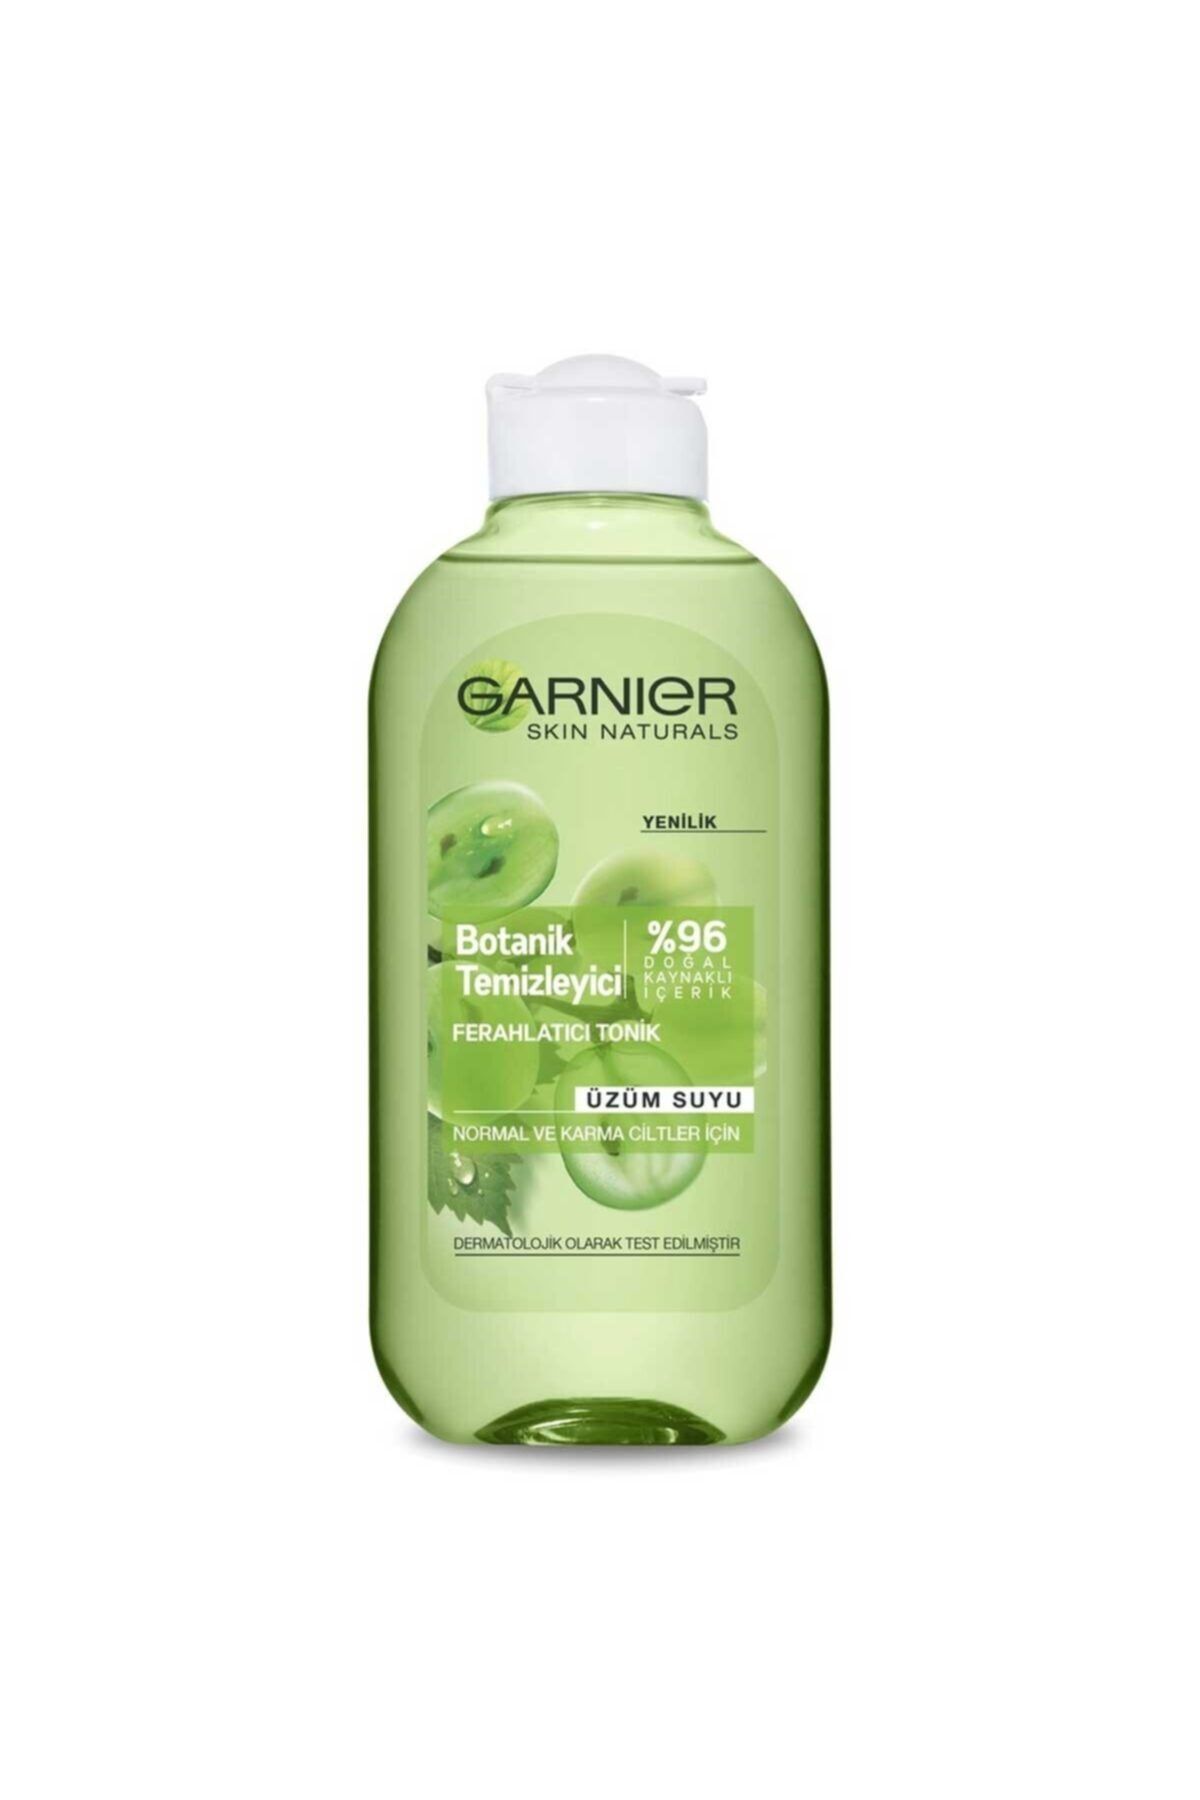 Garnier Botanik Temizleyici Ferahlatıcı Tonik Üzüm Suyu 200 ml